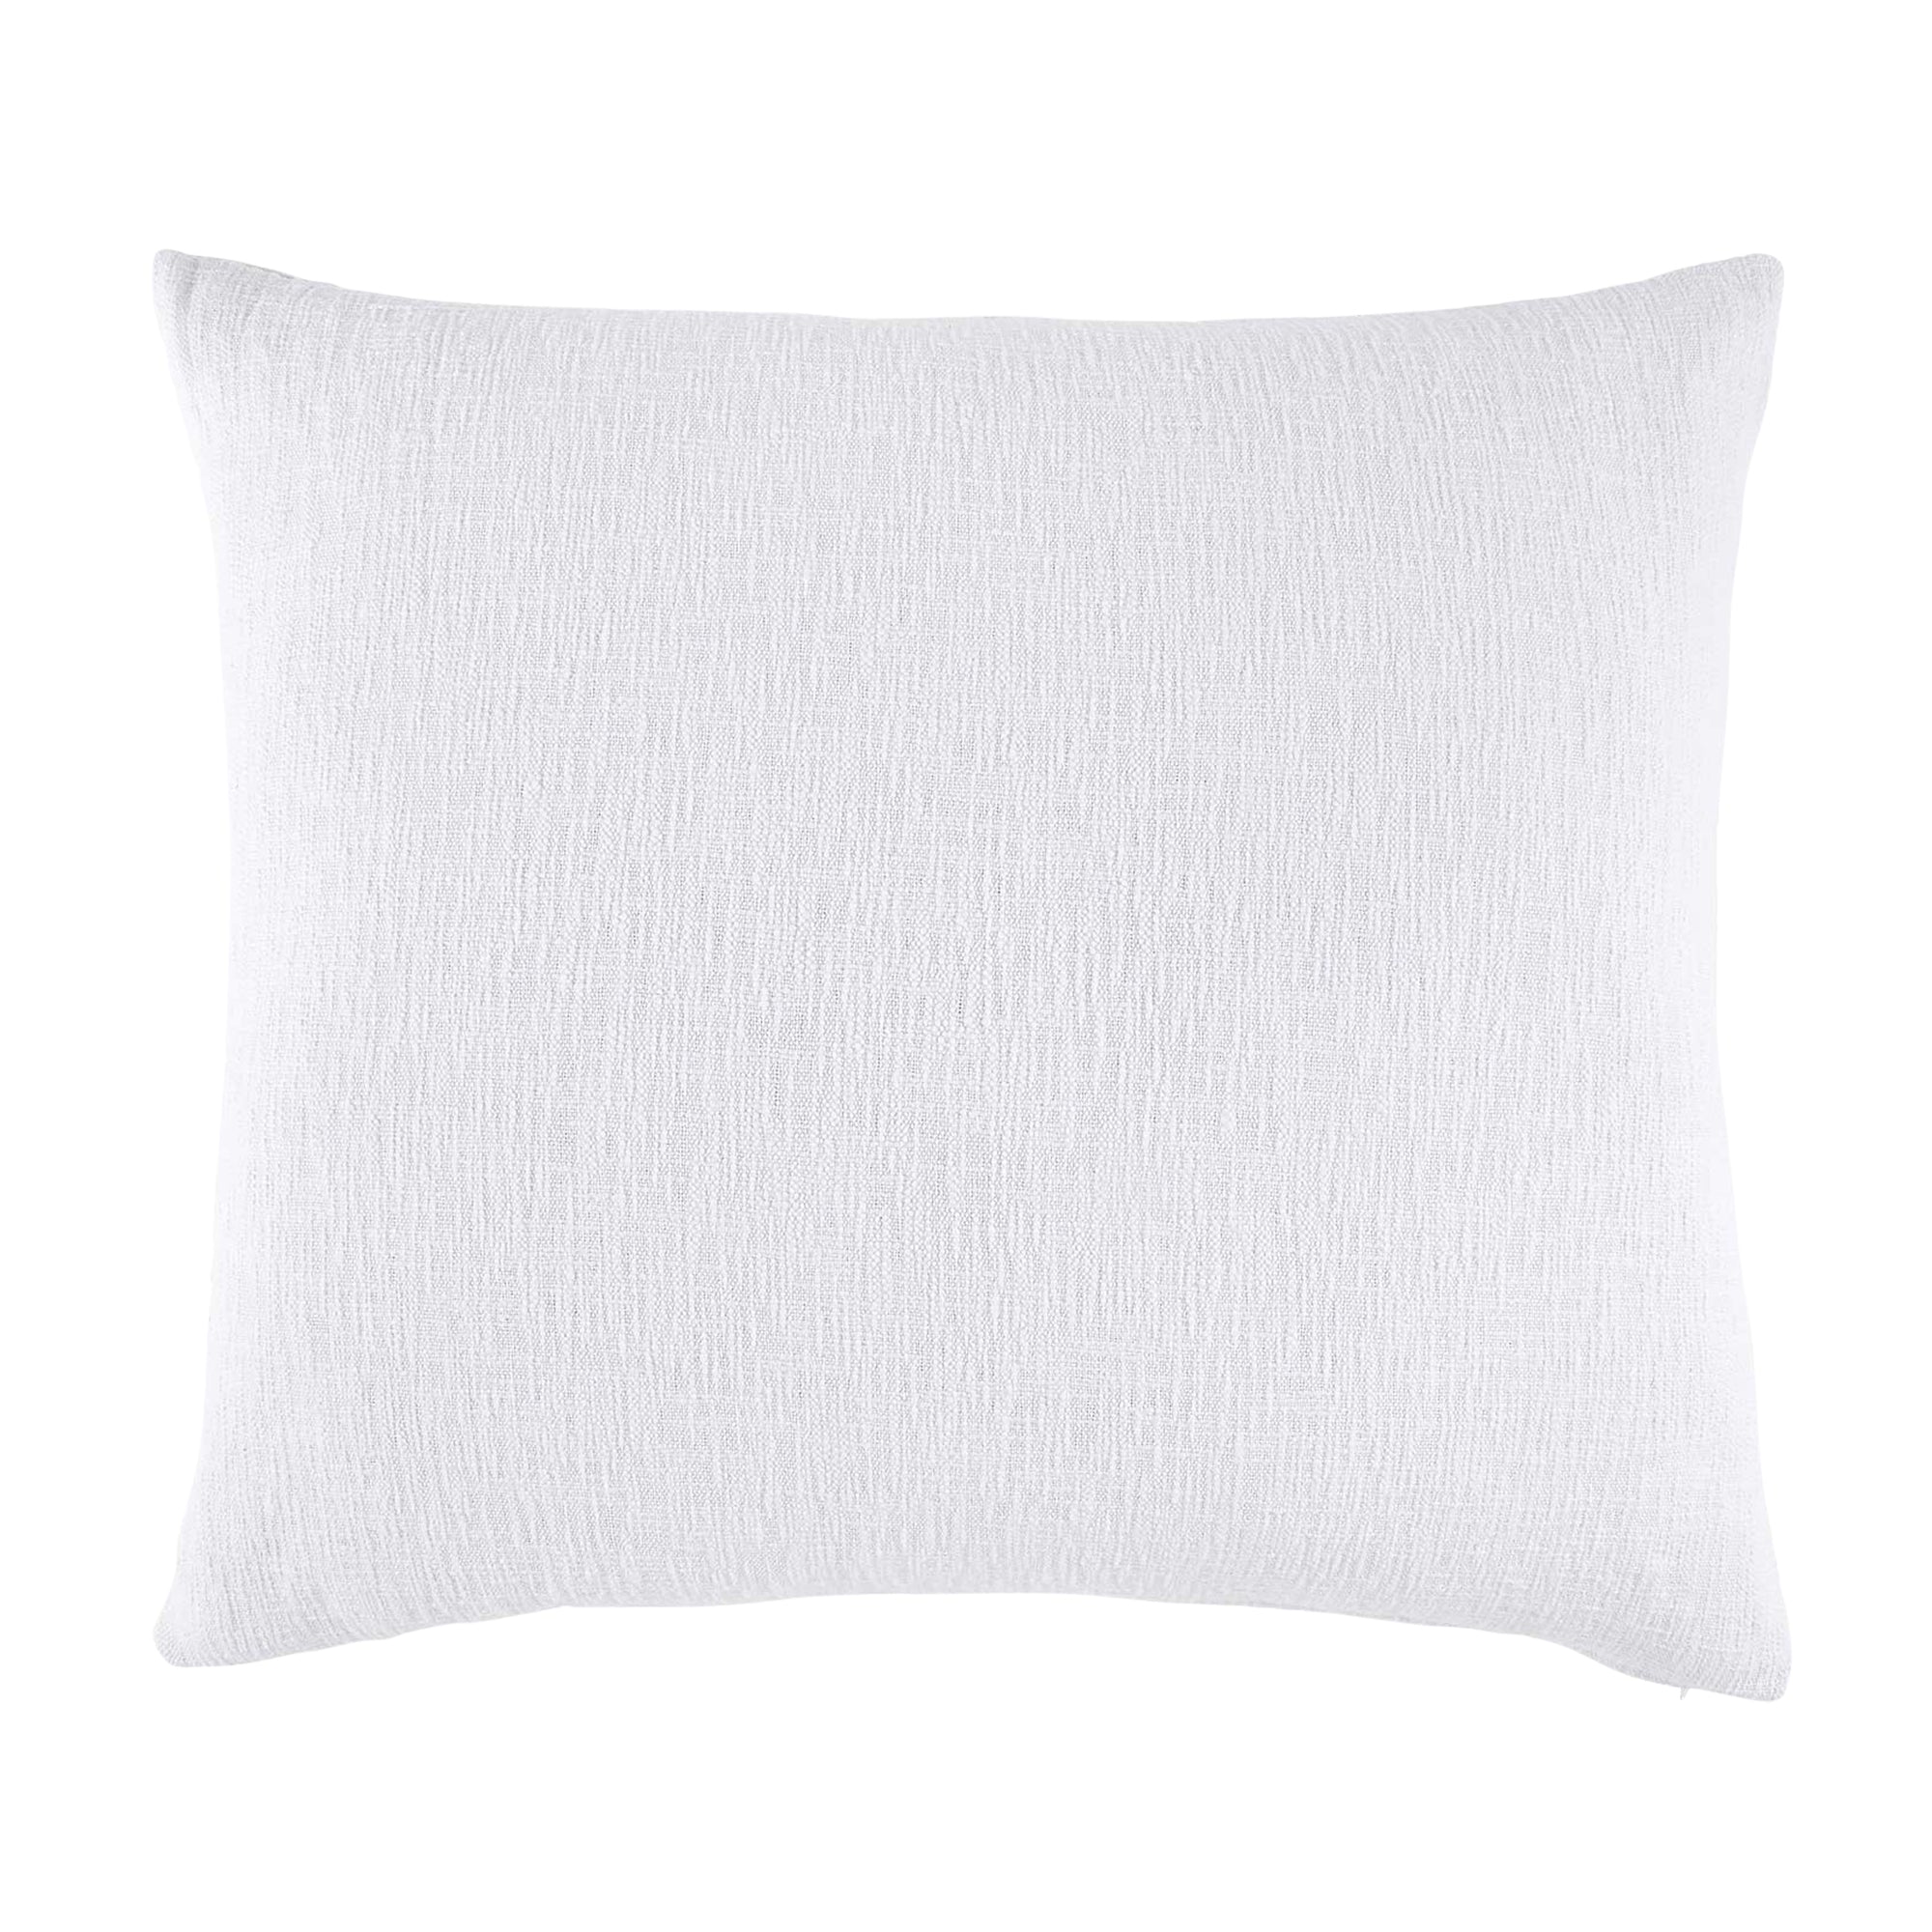 Woven White King Euro Pillow